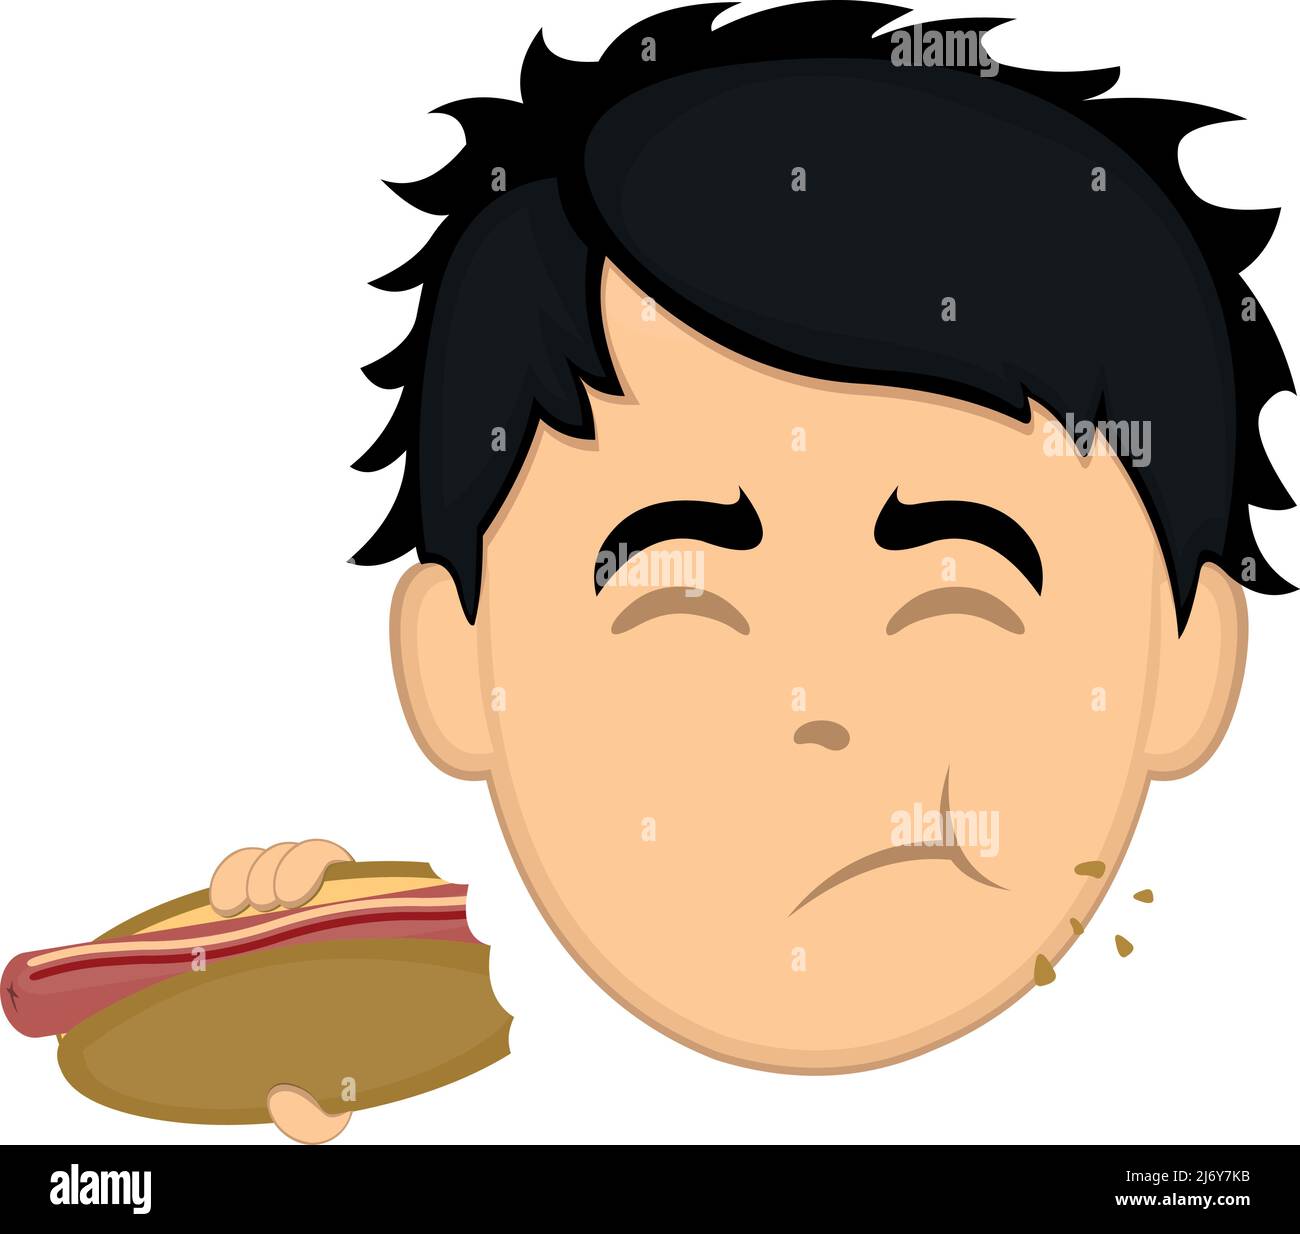 Vektor-Illustration eines Cartoon-Mannes Gesicht essen einen Hot Dog Stock Vektor